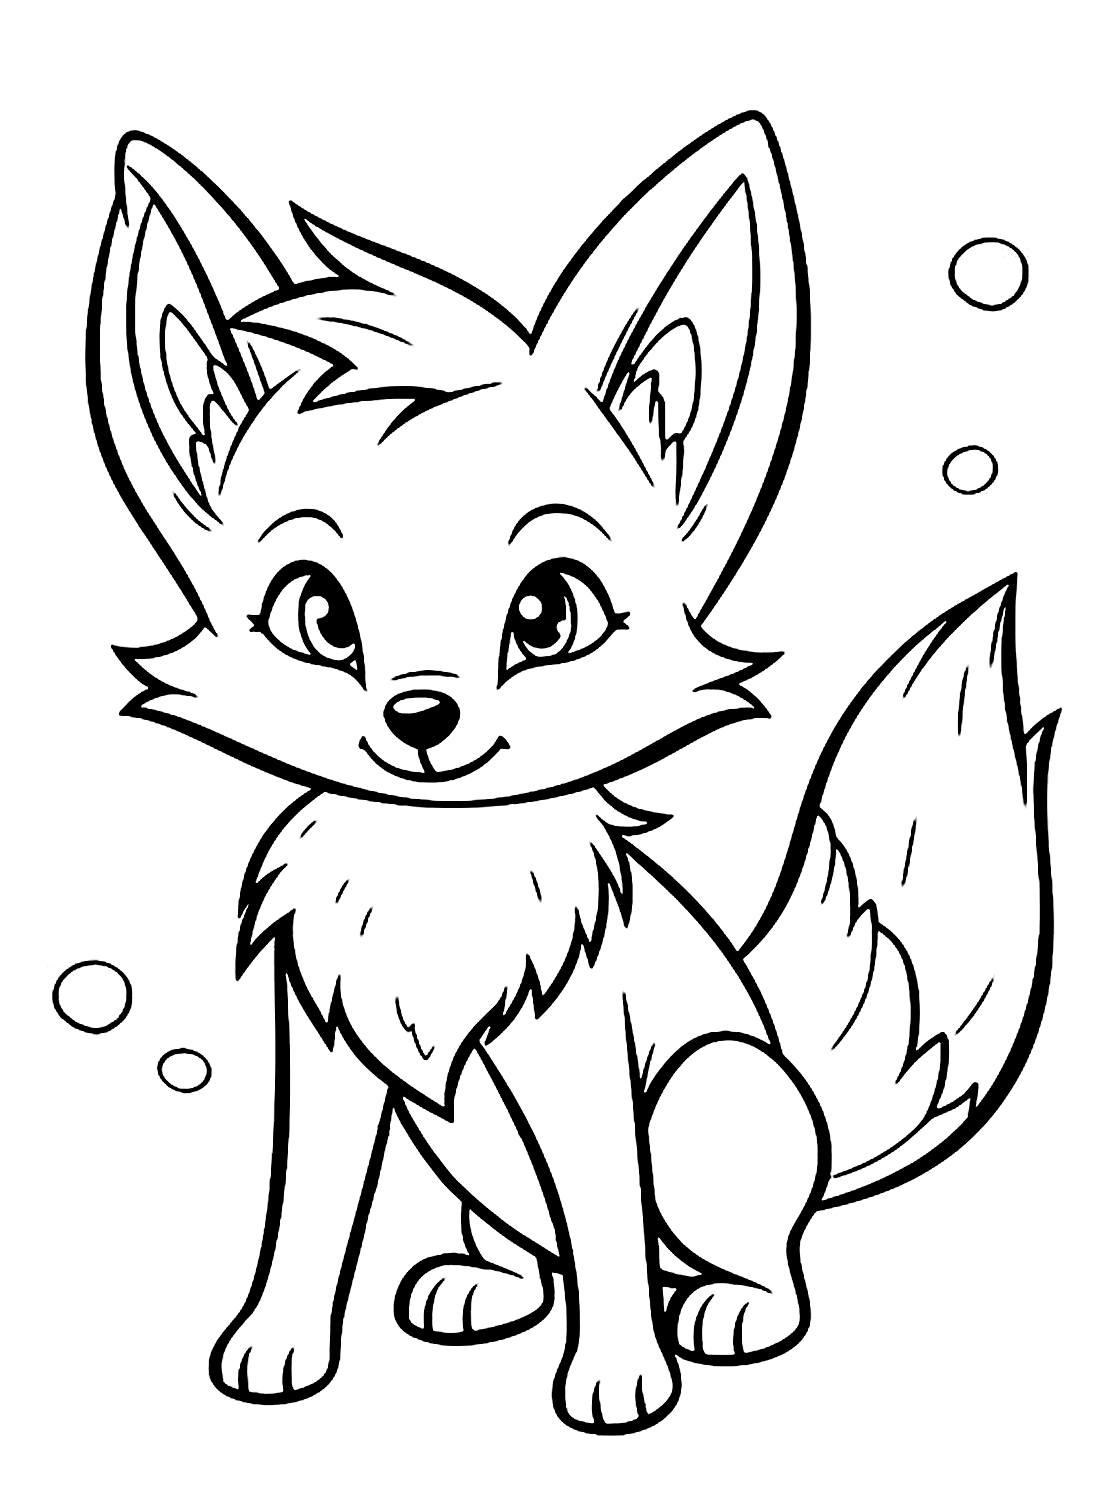 Página colorida de bebê fofo Fox da Fox